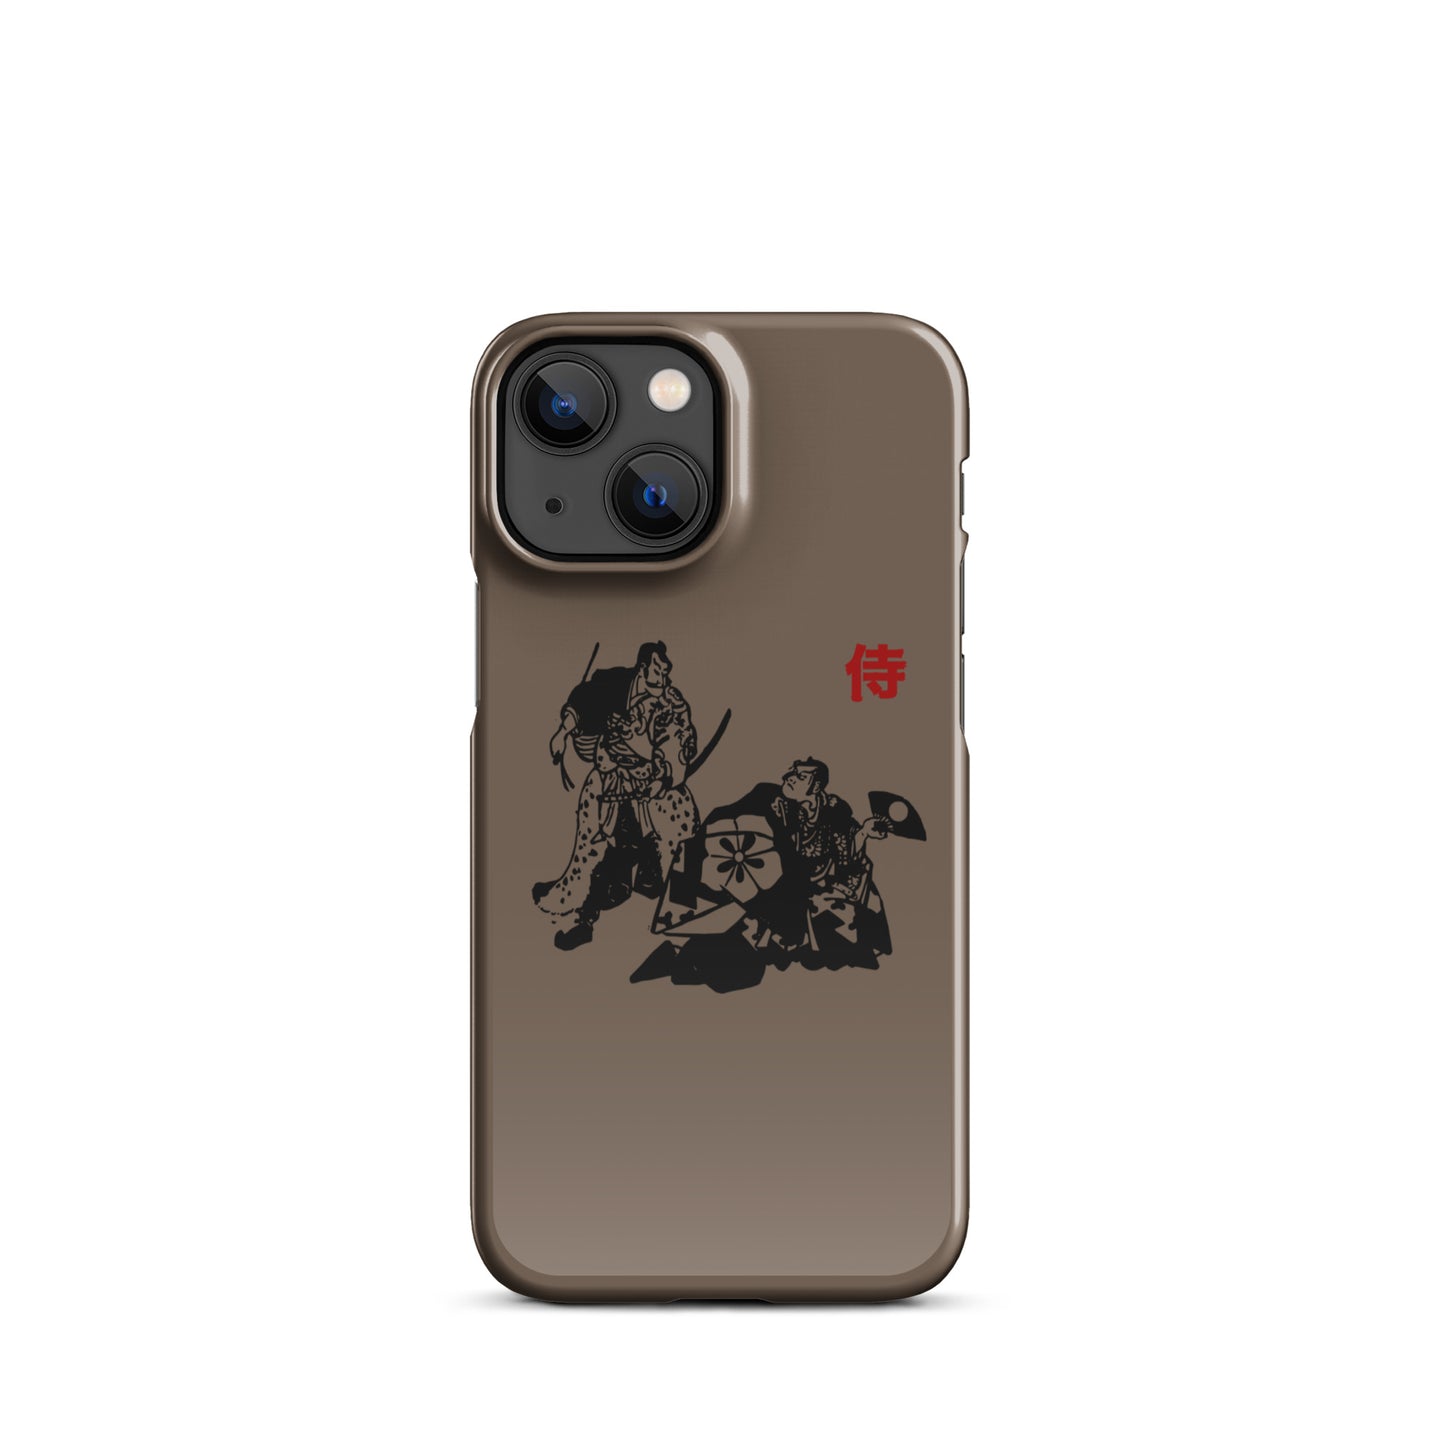 Die Samurai Brown-Hülle für das iPhone®